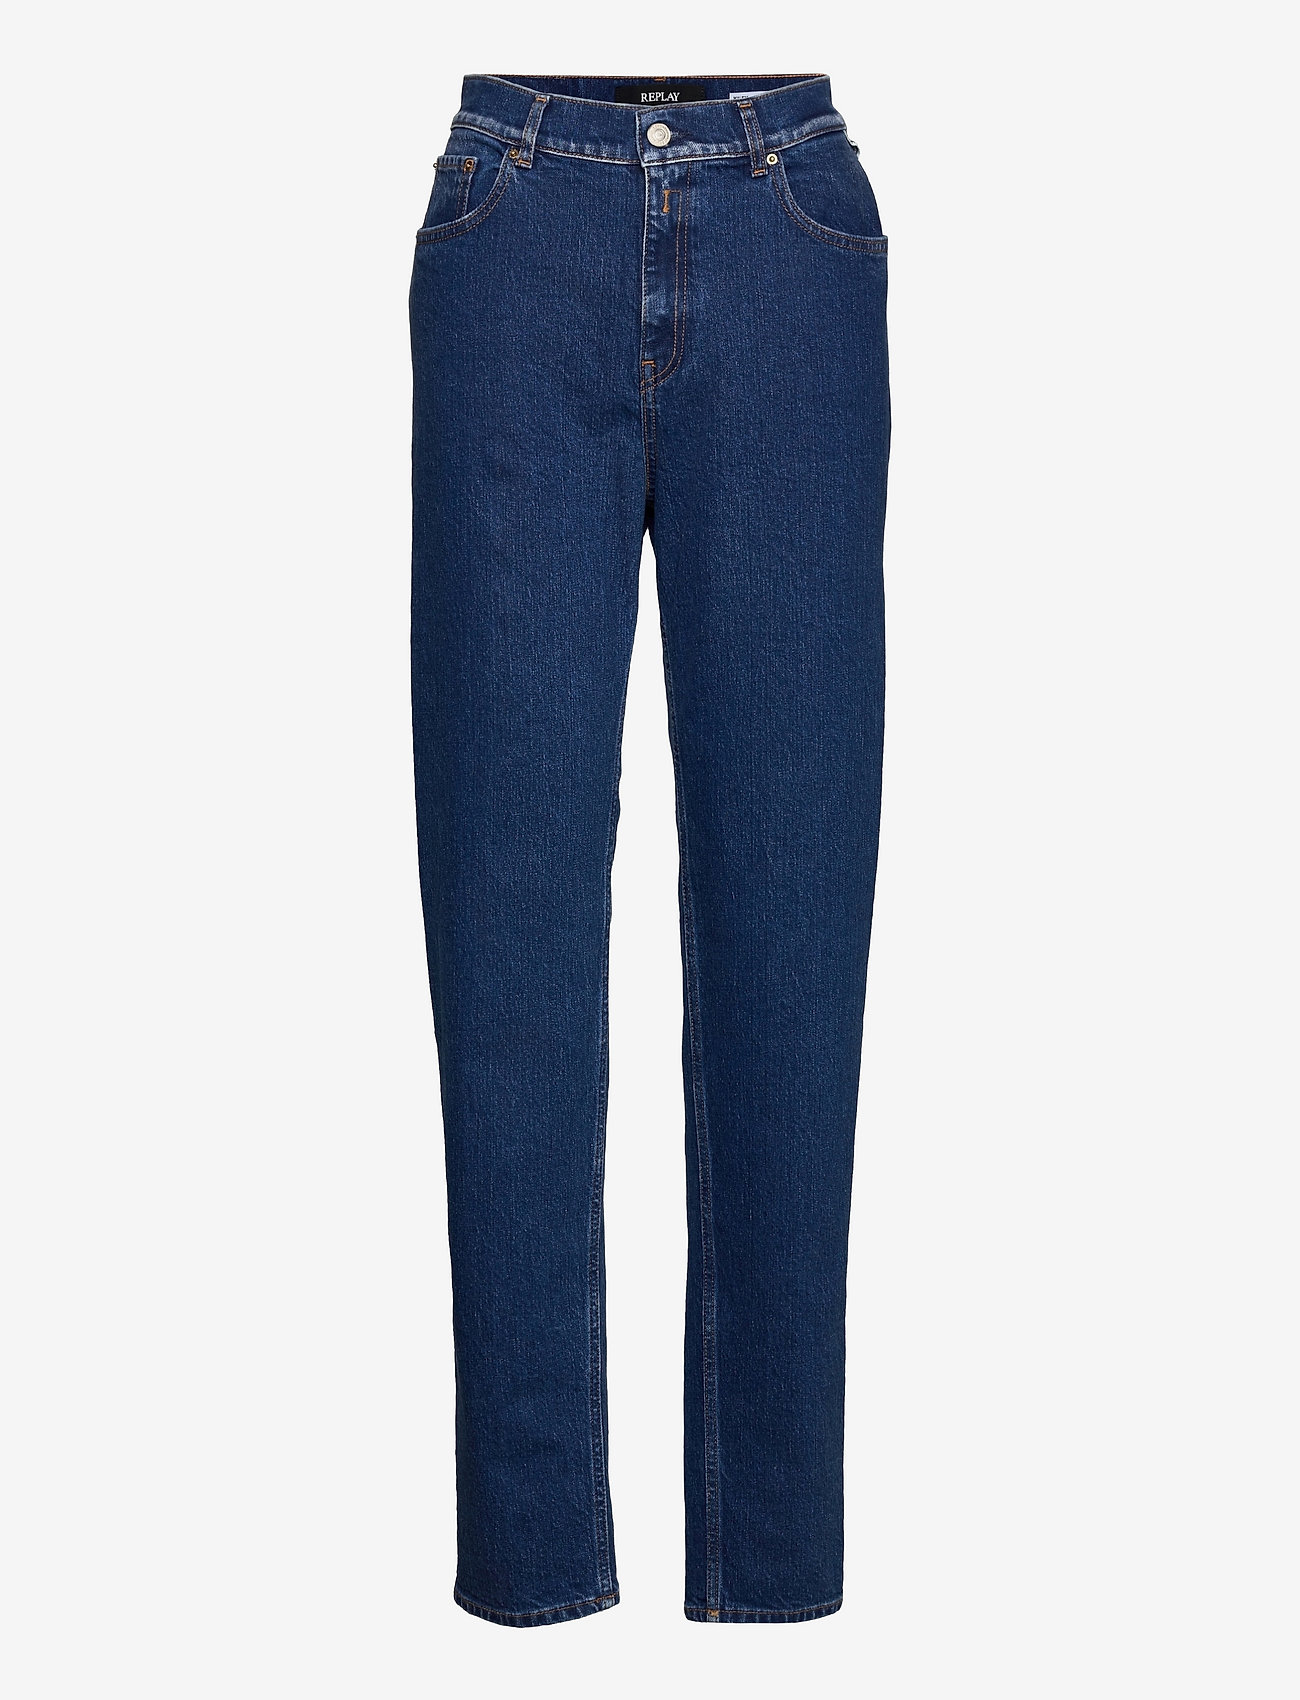 Replay - KILEY Trousers - sirge säärega teksad - medium blue - 0